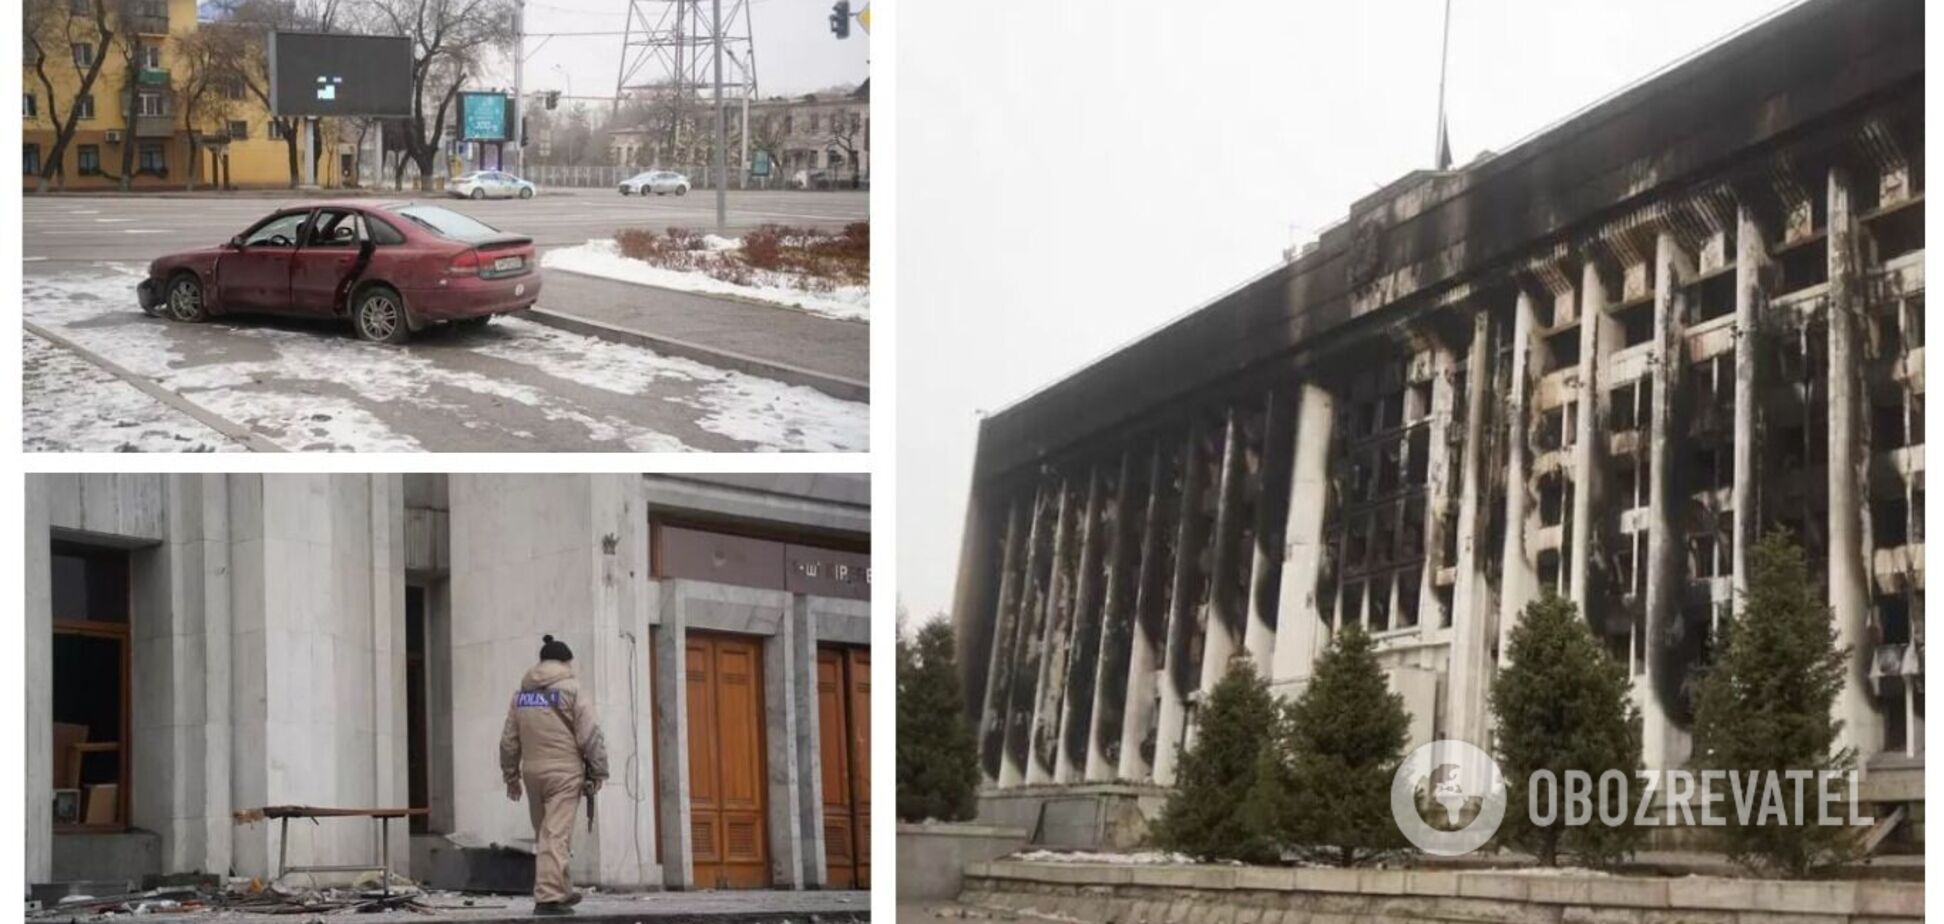 Обгорілі будівлі, бите скло під ногами та спалені авто: як виглядає Алмати після протестів. Фоторепортаж